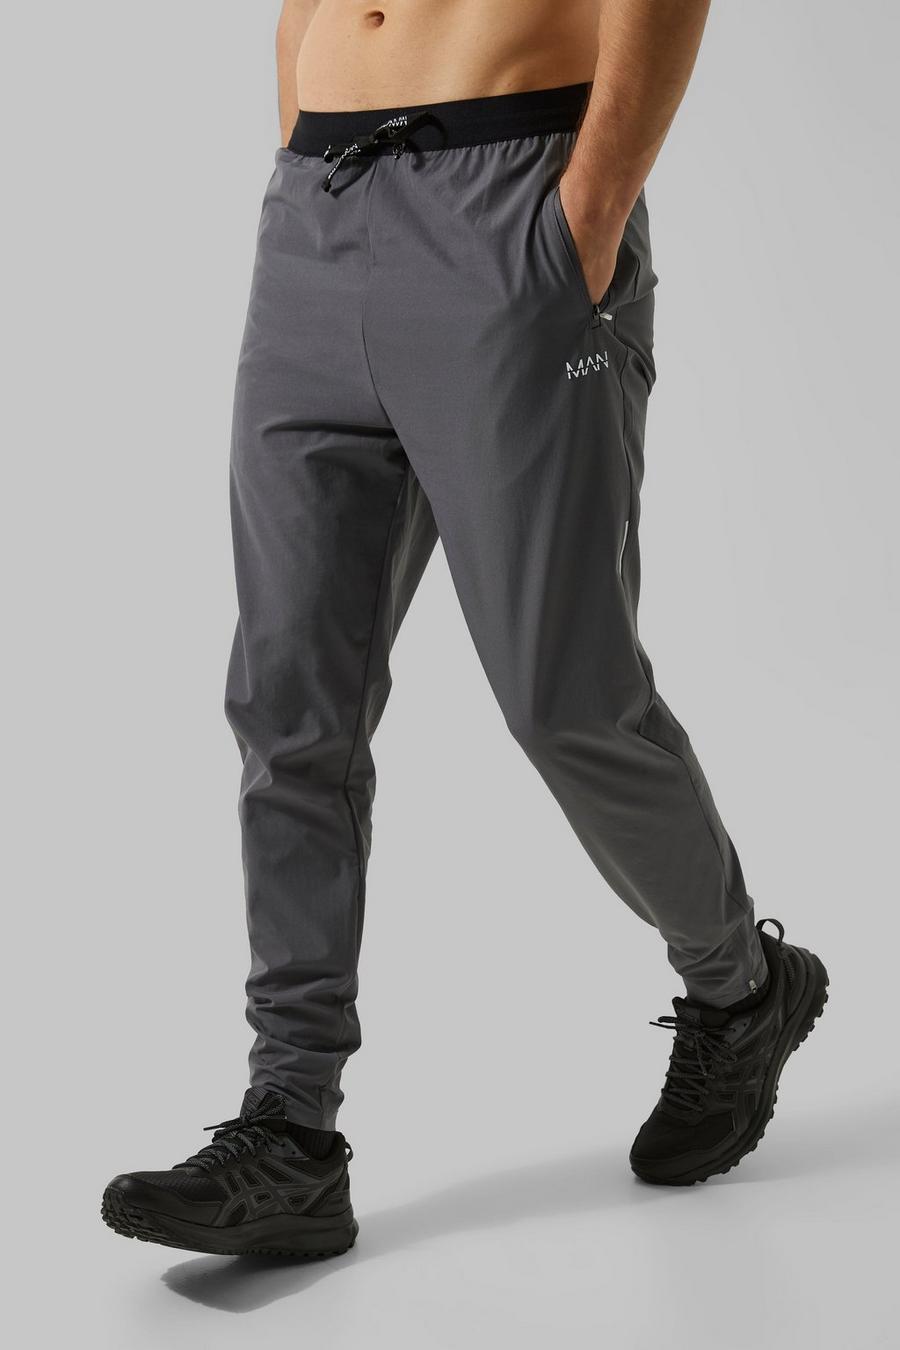 Pantaloni tuta Tall Man Active leggeri per alta performance, Charcoal image number 1